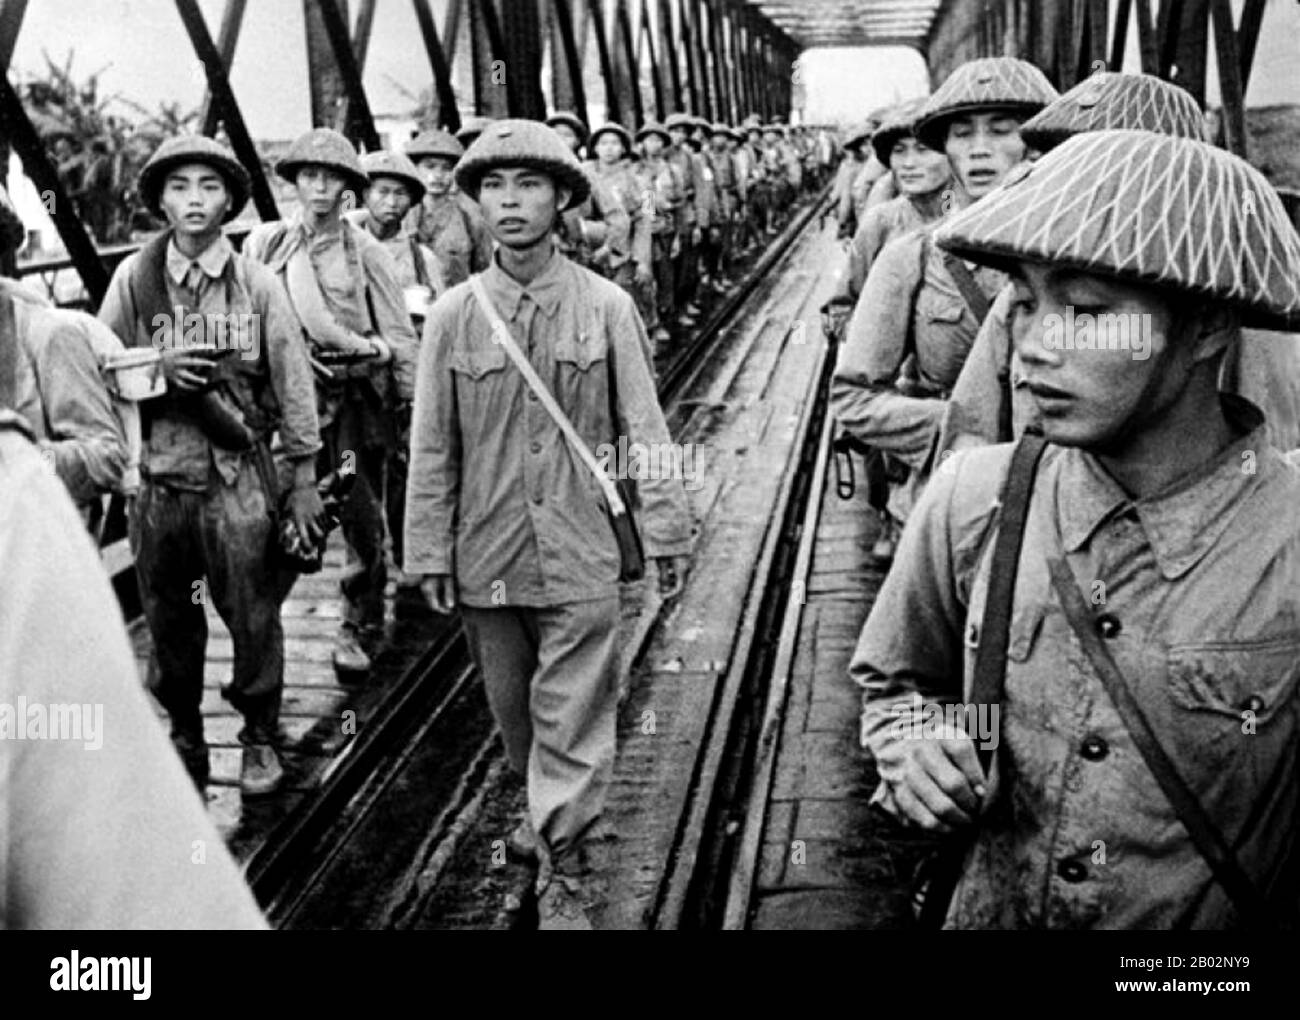 Der Erste Indochinakrieg (auch: Französisch-Indochinakrieg, Antifranzösischer Krieg, Französisch-Vietnamesischer Krieg, Französisch-Vietminischer Krieg, Indochinakrieg, Schmutziger Krieg in Frankreich und Anti-Französischer Widerstandskrieg im zeitgenössischen Vietnam) wurde vom 19. Dezember 1946 bis zum 1. August 1954 in Französisch-Indochina ausgetragen. Der Krieg fand zwischen dem französischen Fernost-Expeditionskorps der französischen Union statt, das von Frankreich angeführt und von der vietnamesischen Nationalarmee Kaiser Bảo Đại gegen die Việt Minh unterstützt wurde, angeführt von Hồ Chí Minh und Võ Nguyên Giáp. Die meisten Kämpfe fanden in Tonkin im Norden Vietnams statt, obwohl der Konflikt Stockfoto